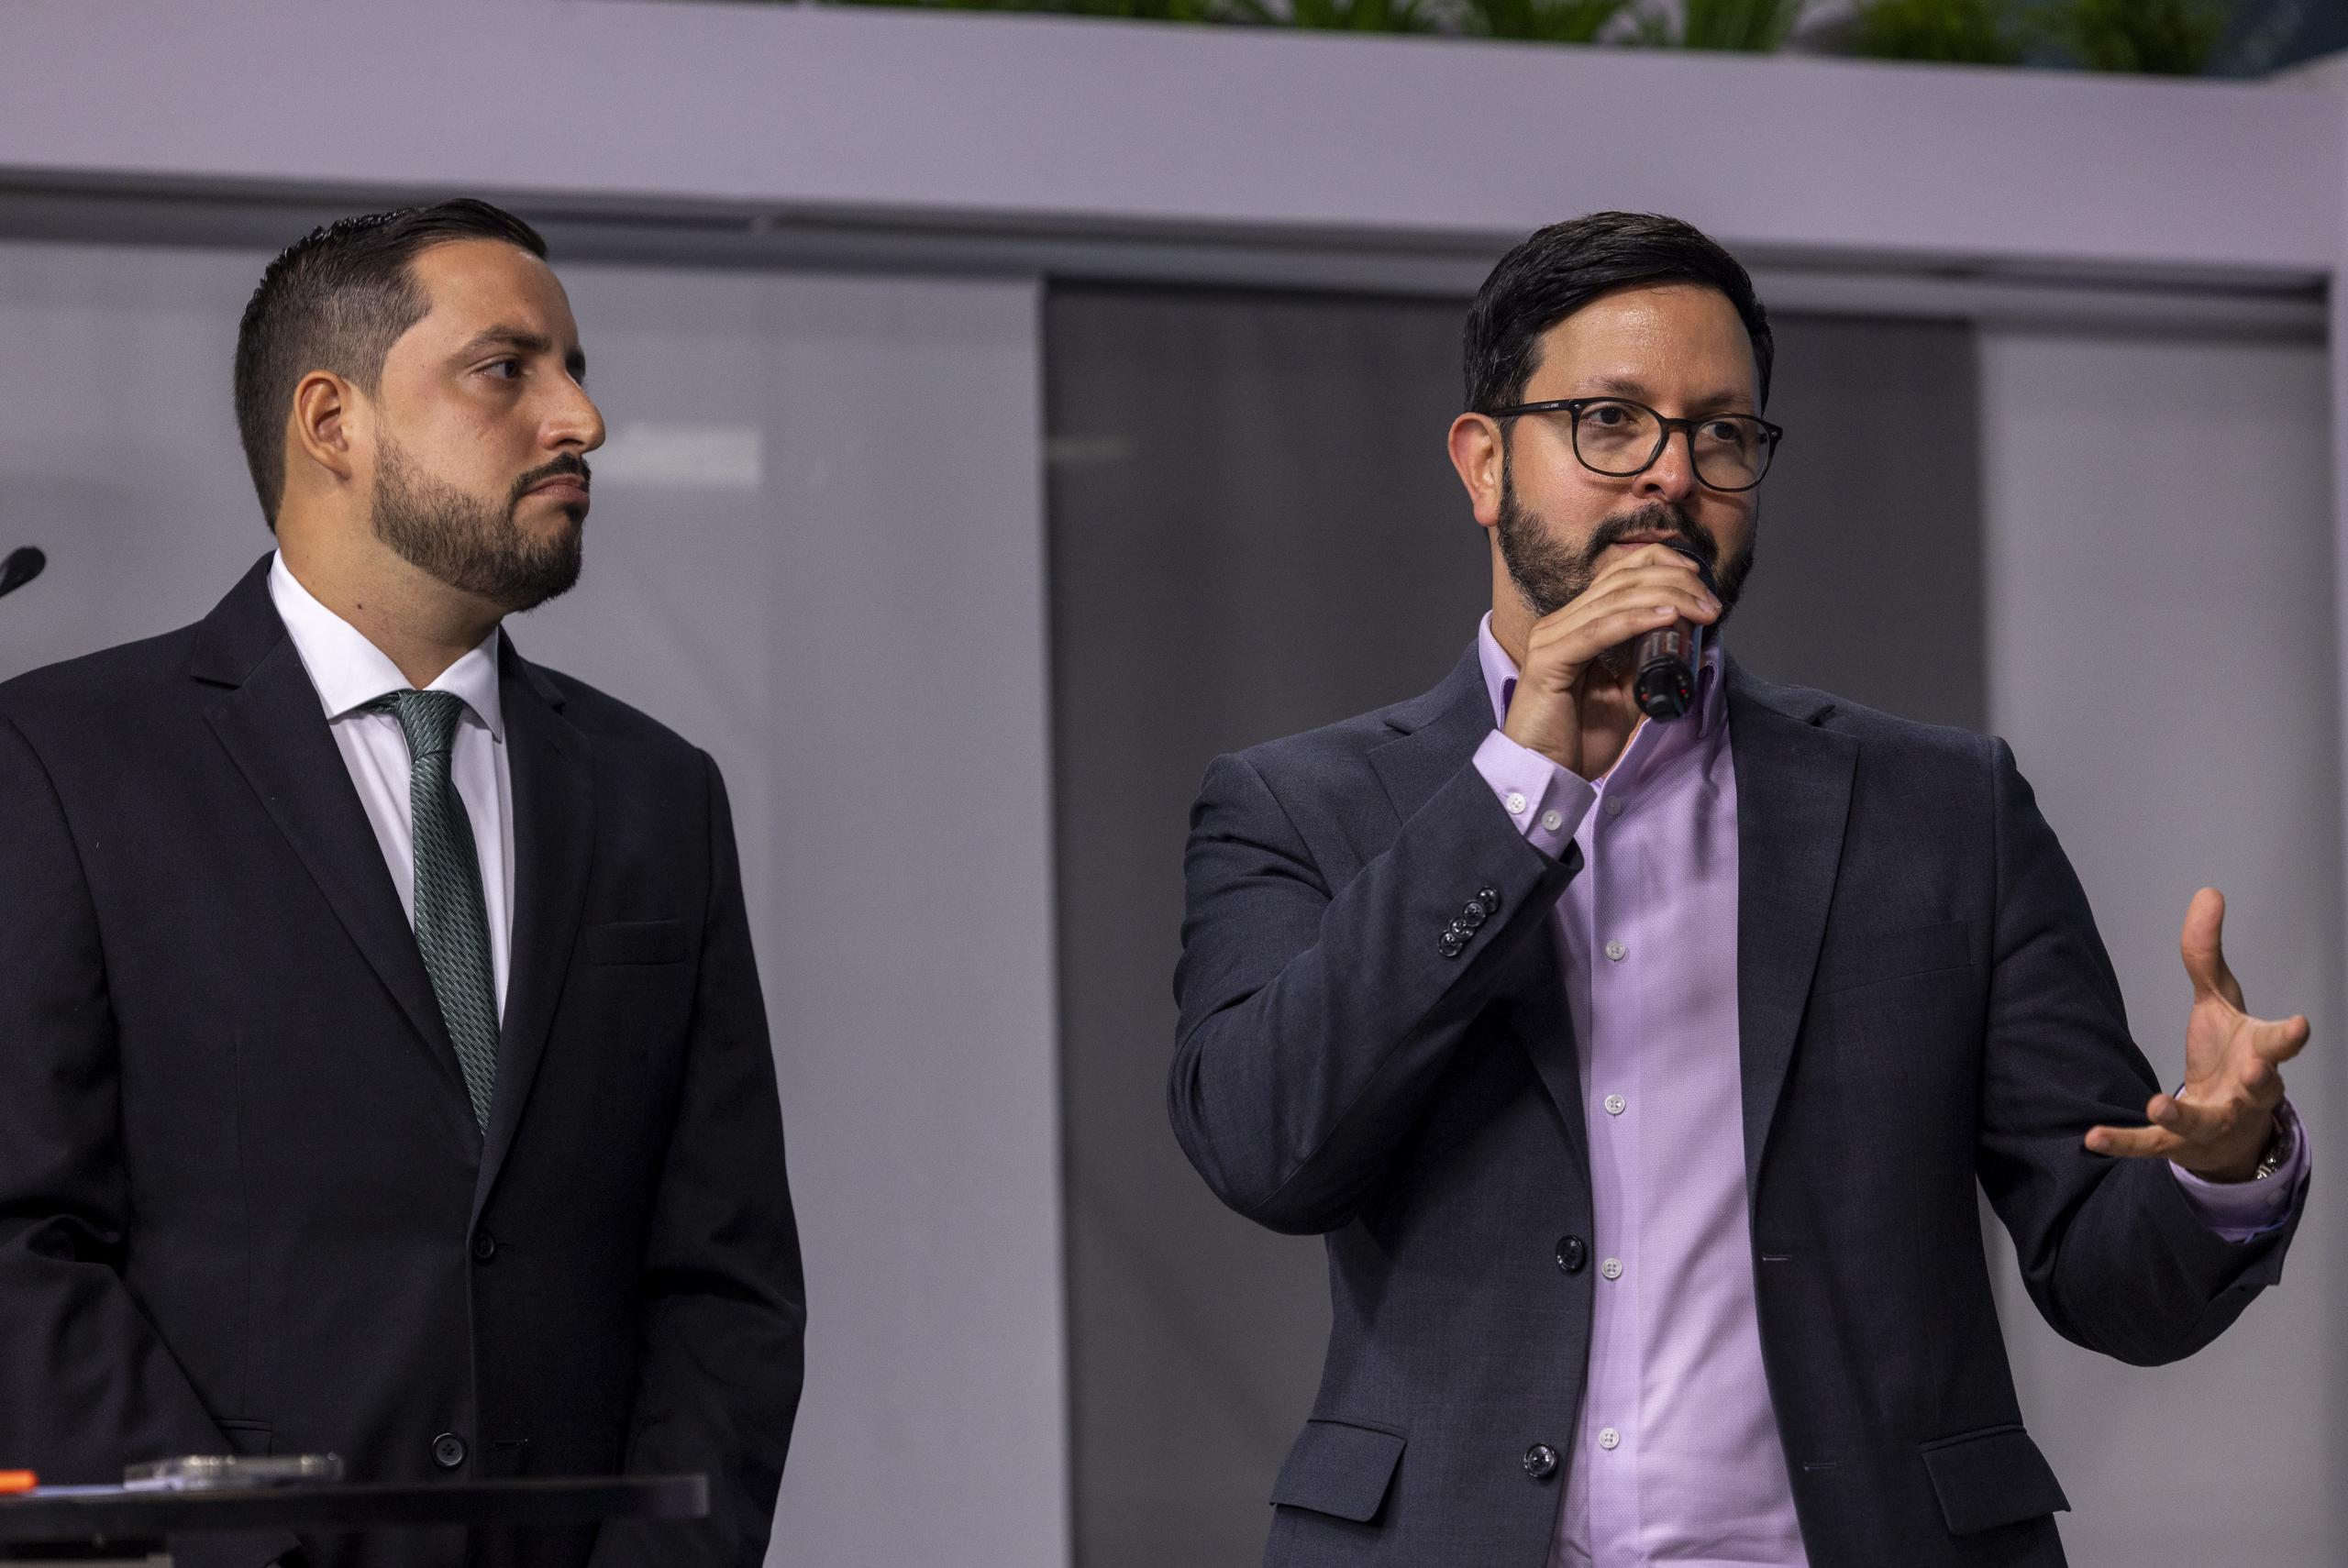 Jorge E. Pagán Pagán, presidente de WIPR, y Rafael Lama, director general de GFR Media, se expresaron entusiasmados con esta alianza informativa para el beneficio de los electores.